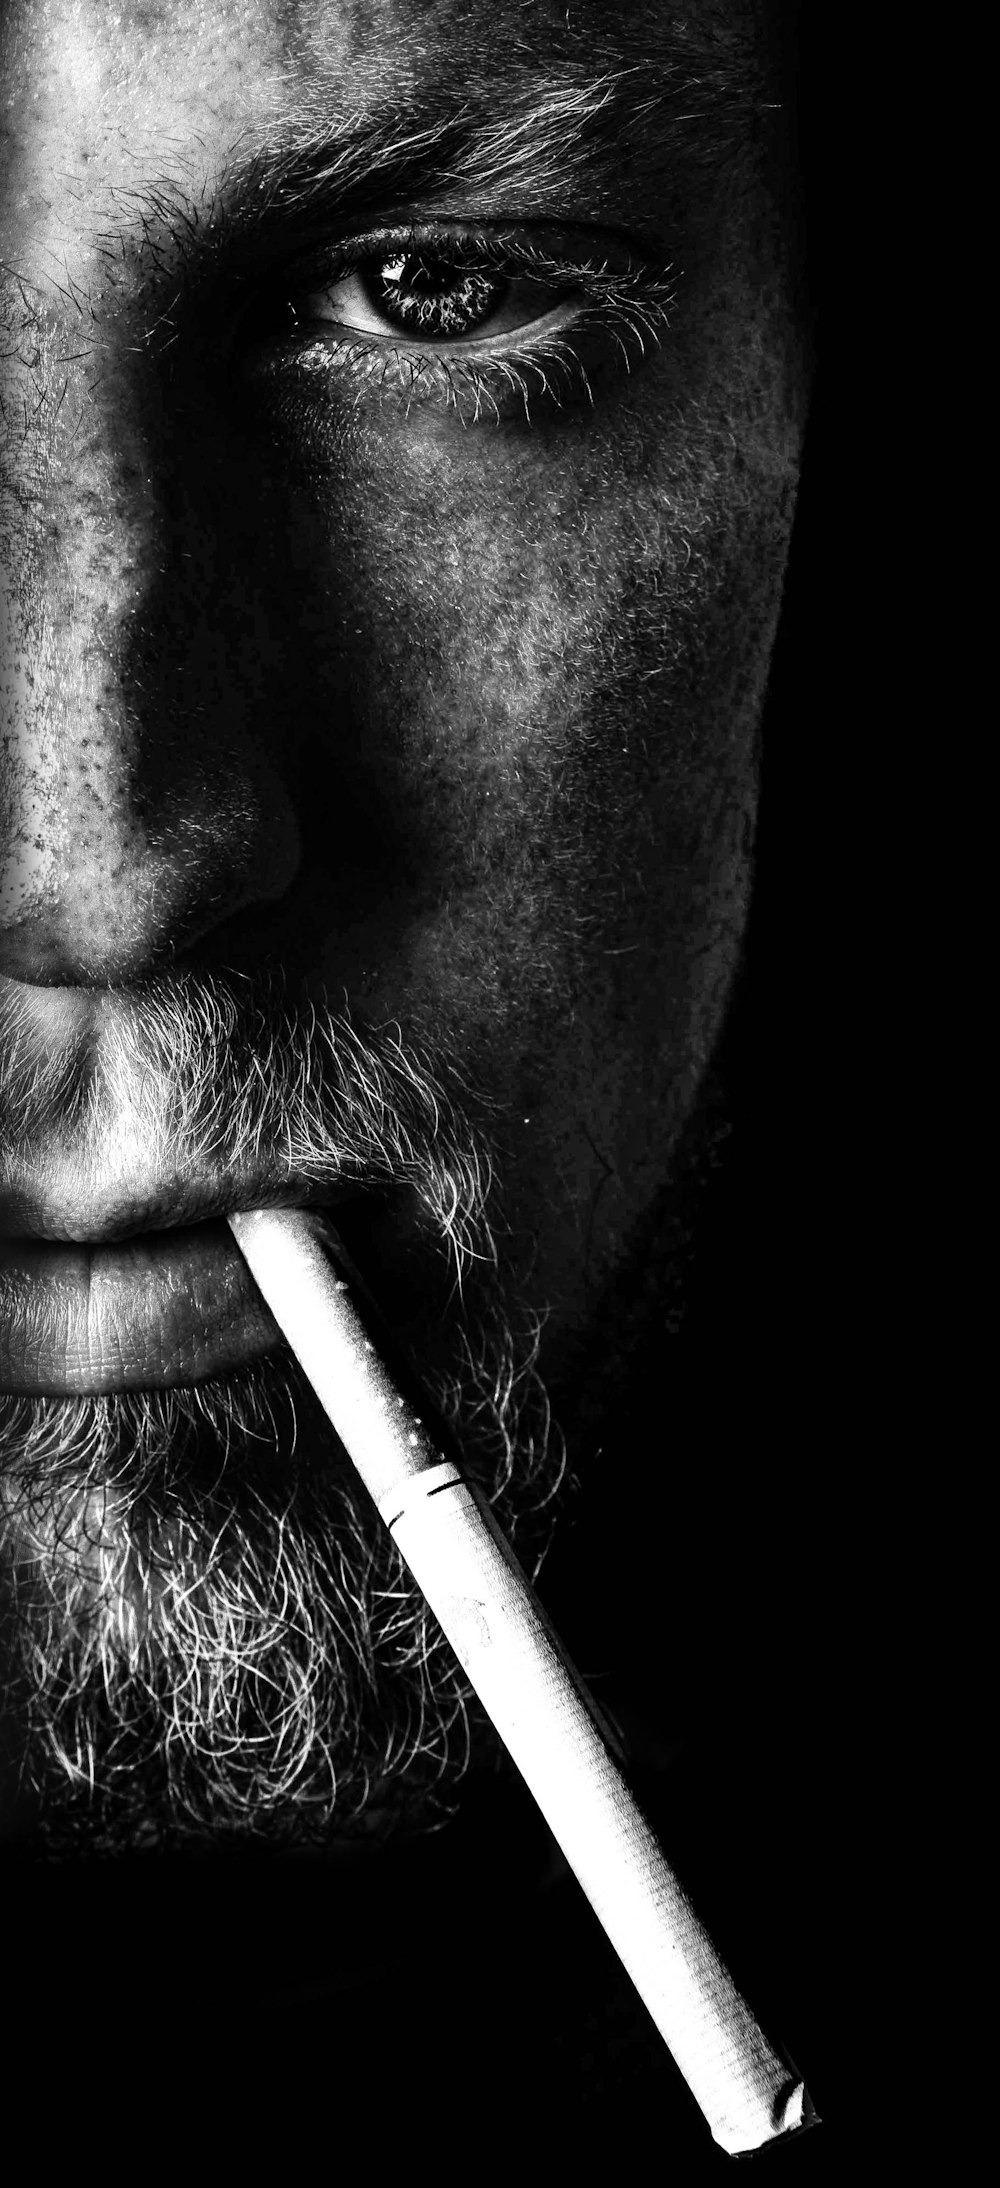 Mann raucht Zigarette in Graustufenfotografie